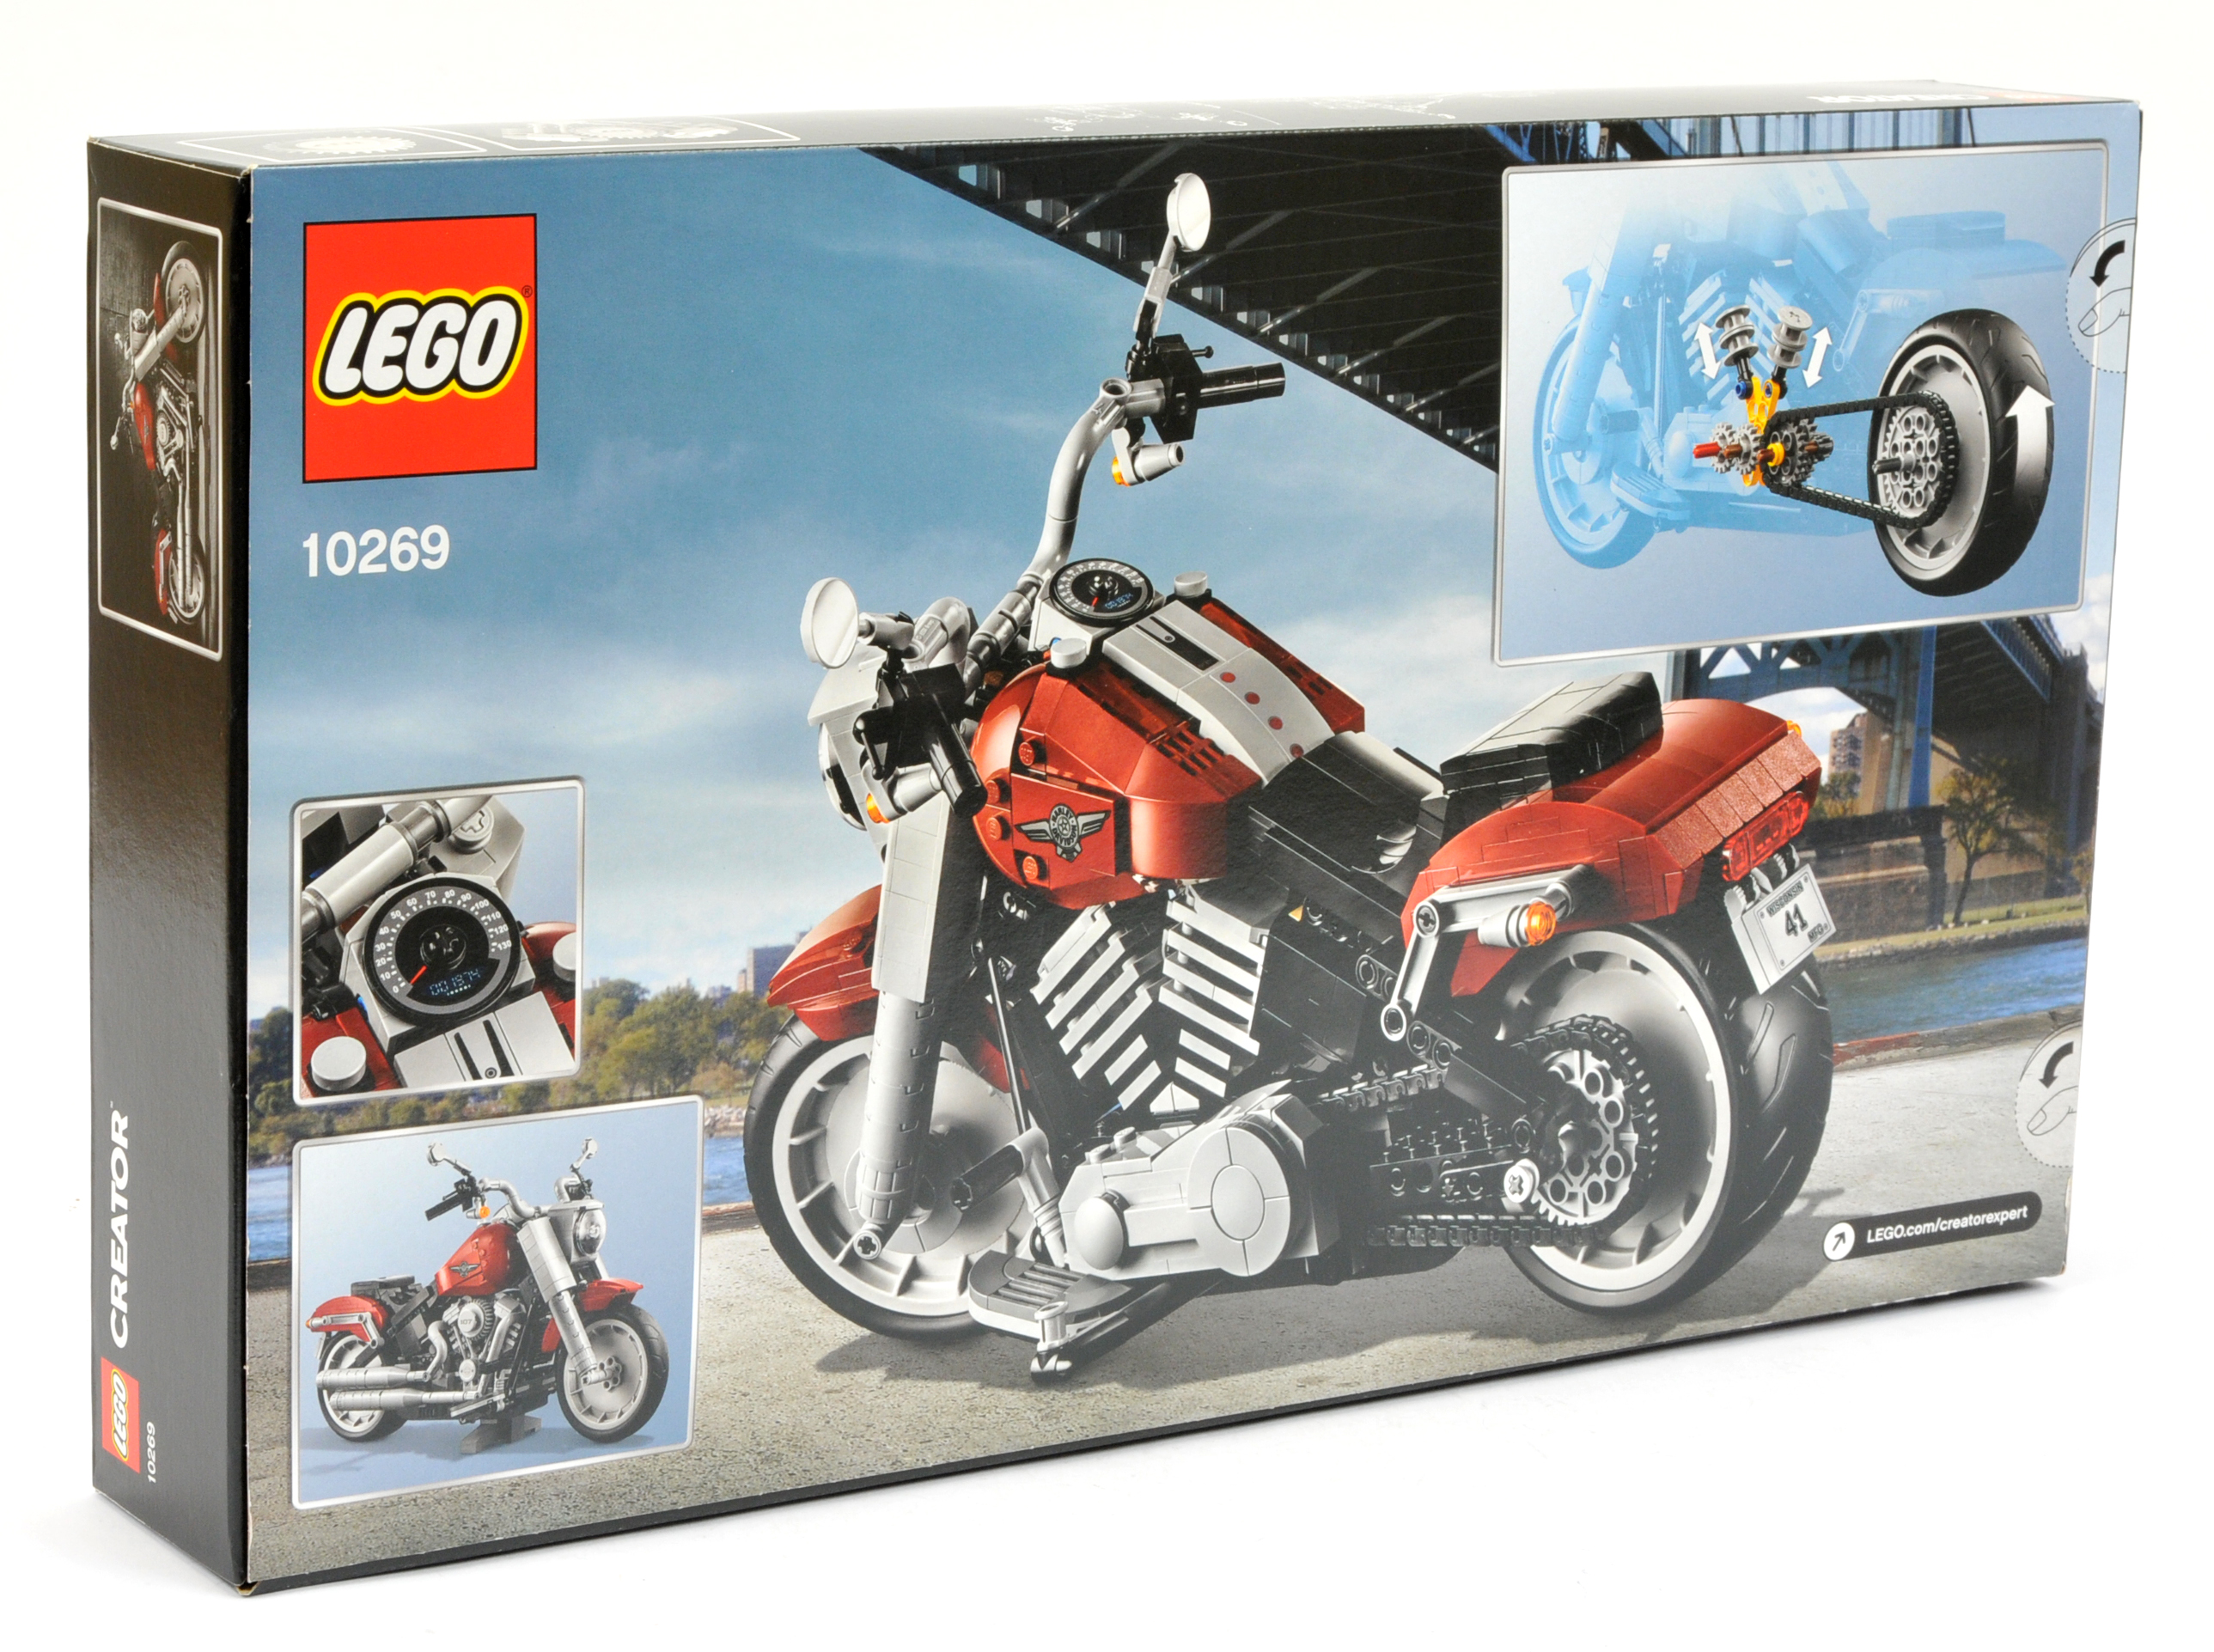 Lego 10269 Creator - Harley-Davidson Fat Boy, within Near Mint sealed box. - Image 2 of 2